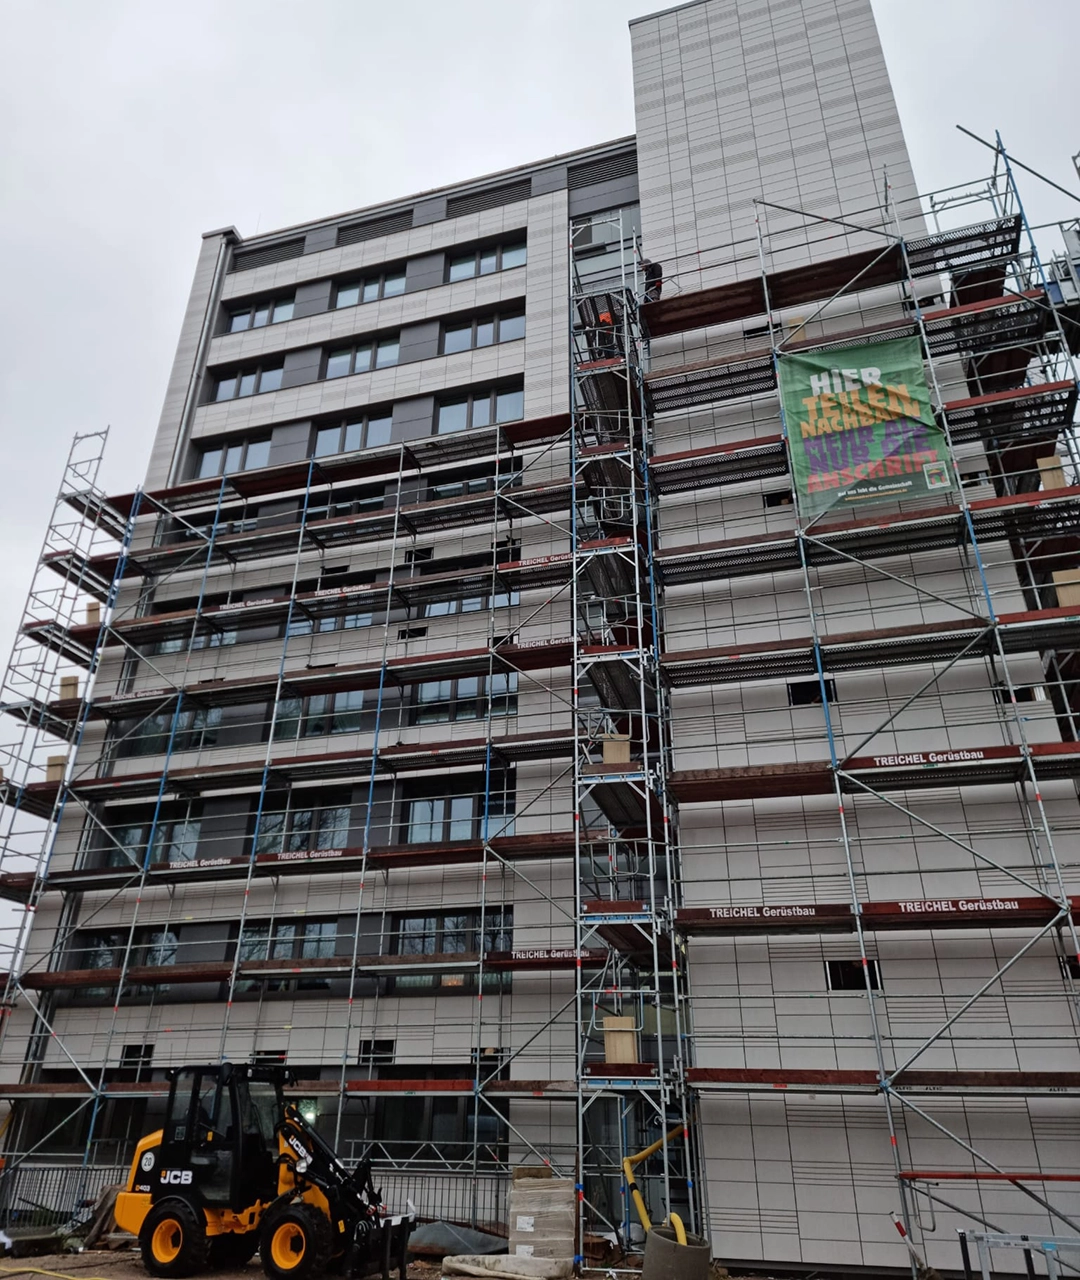 Balkonverglasung Sanierung Eydtkuhnenweg - Verglaste Loggien für mehr Wohnkomfort
(Bauphase)